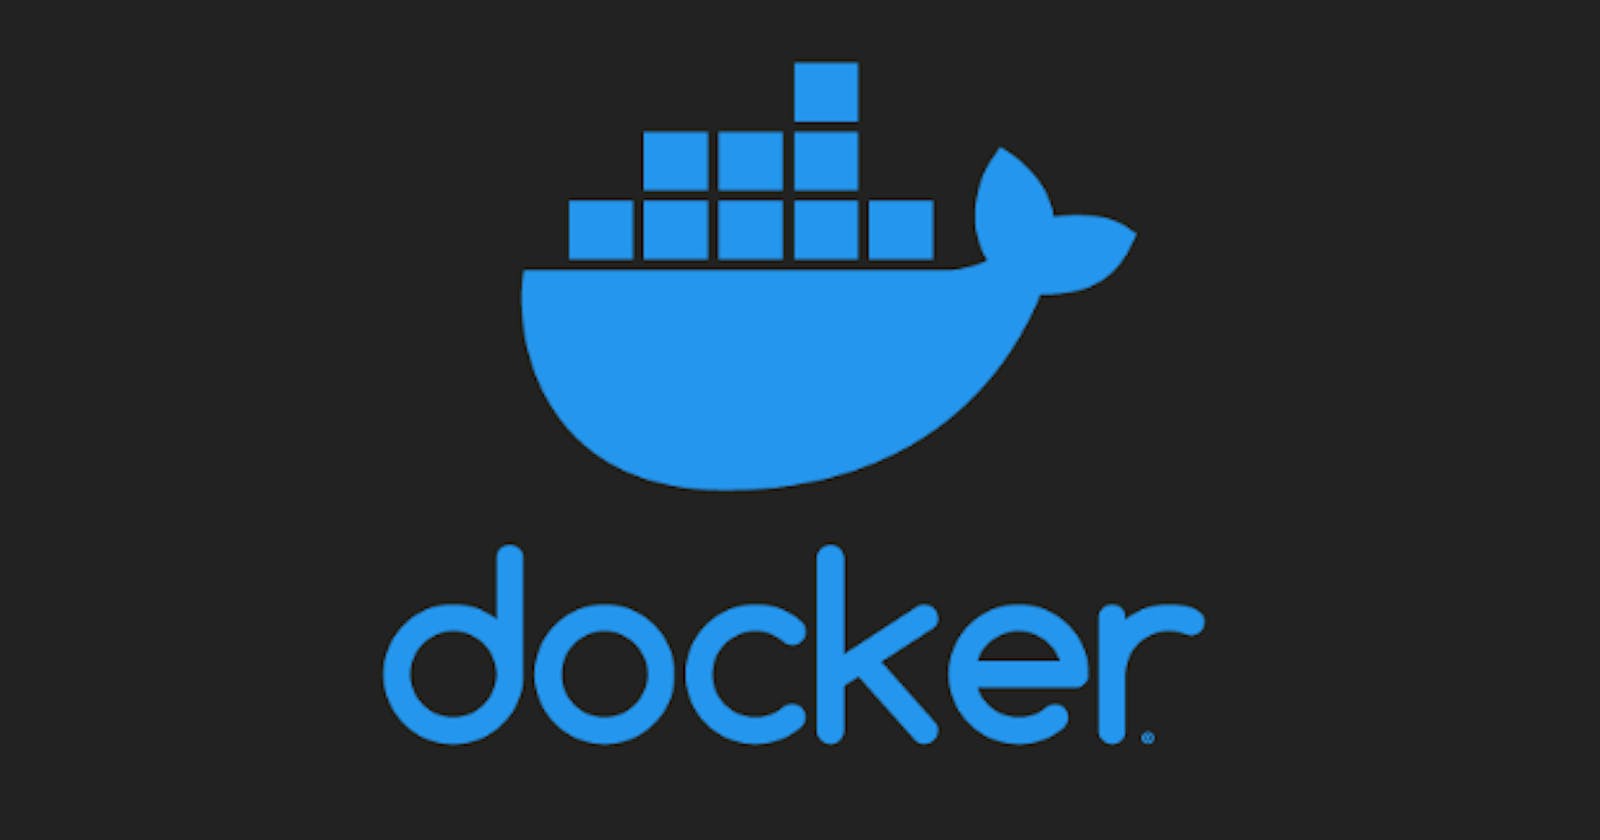 Blog 03 : Docker Volume How to Share it